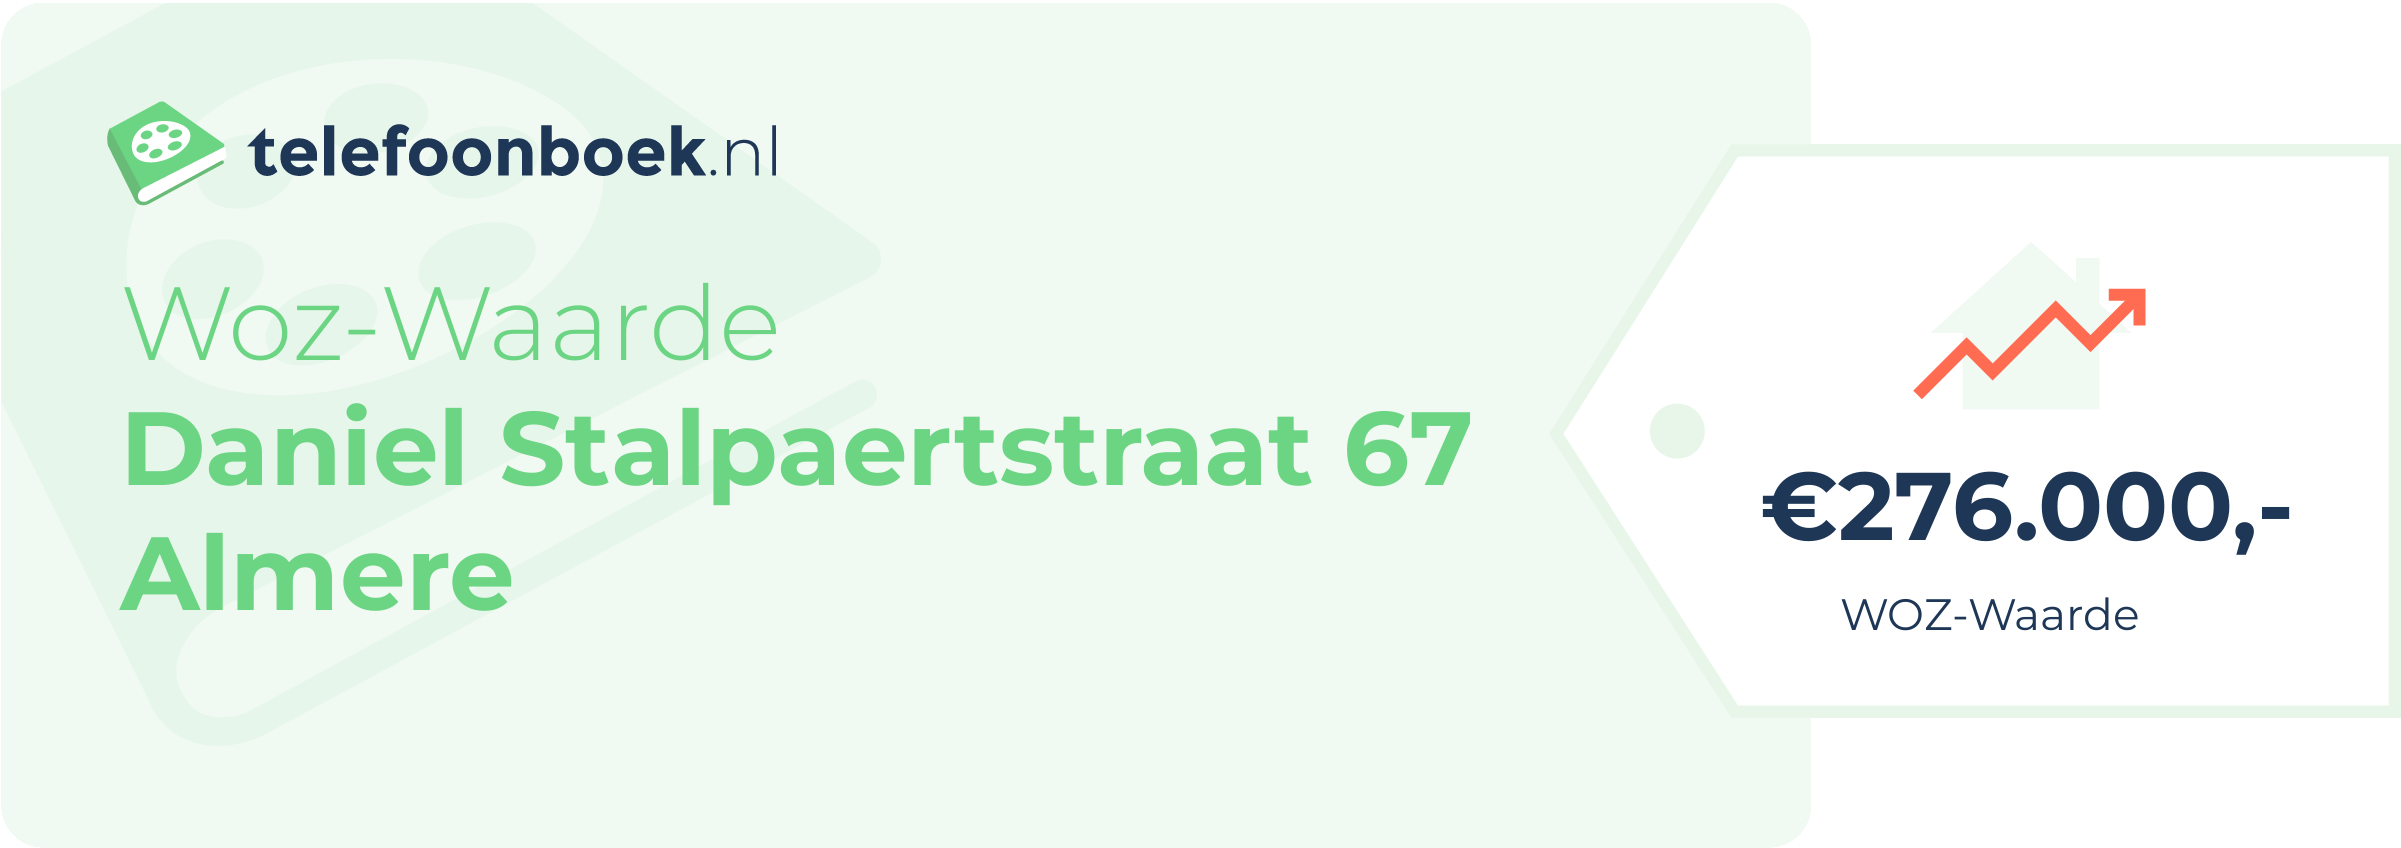 WOZ-waarde Daniel Stalpaertstraat 67 Almere